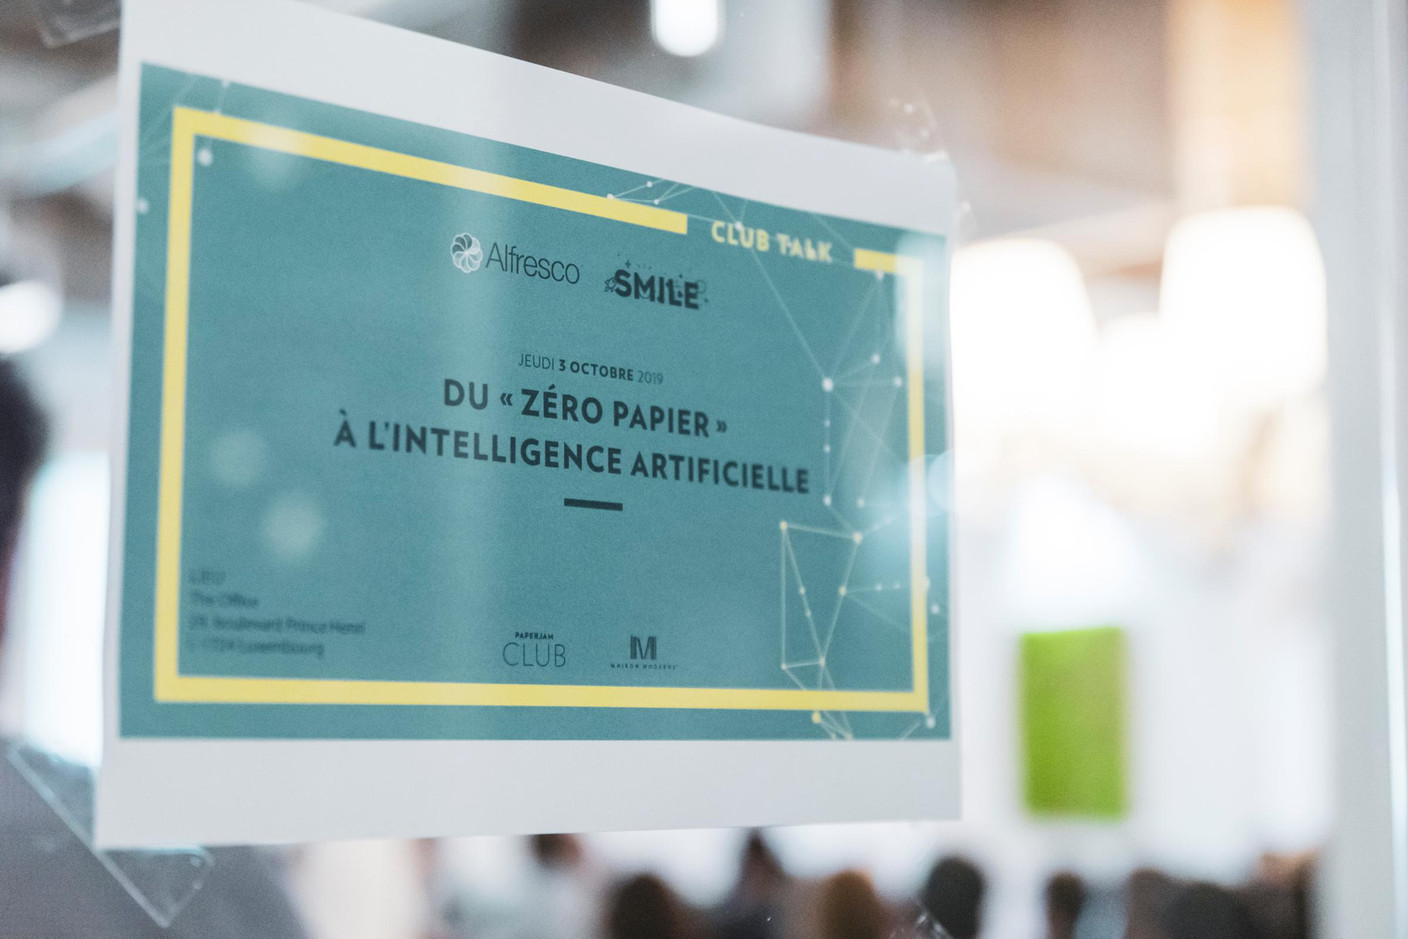 Table Ronde: Du «zéro papier» à l’intelligence artificielle – 03.10.2019 (Photo: Patricia Pitsch/Maison Moderne)